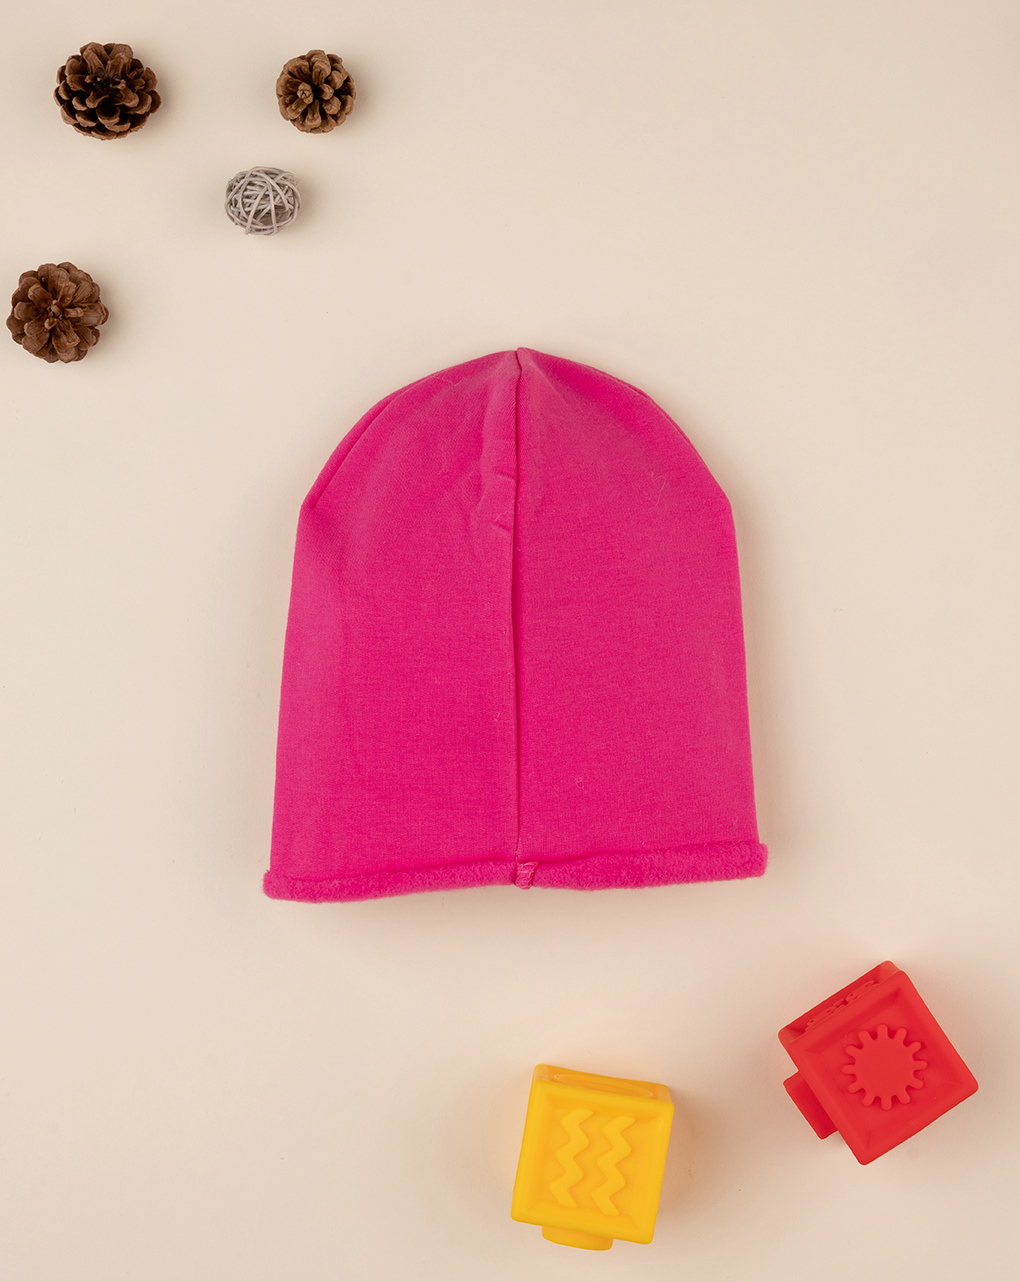 Gorra rosa "corazón" de niña - Prénatal